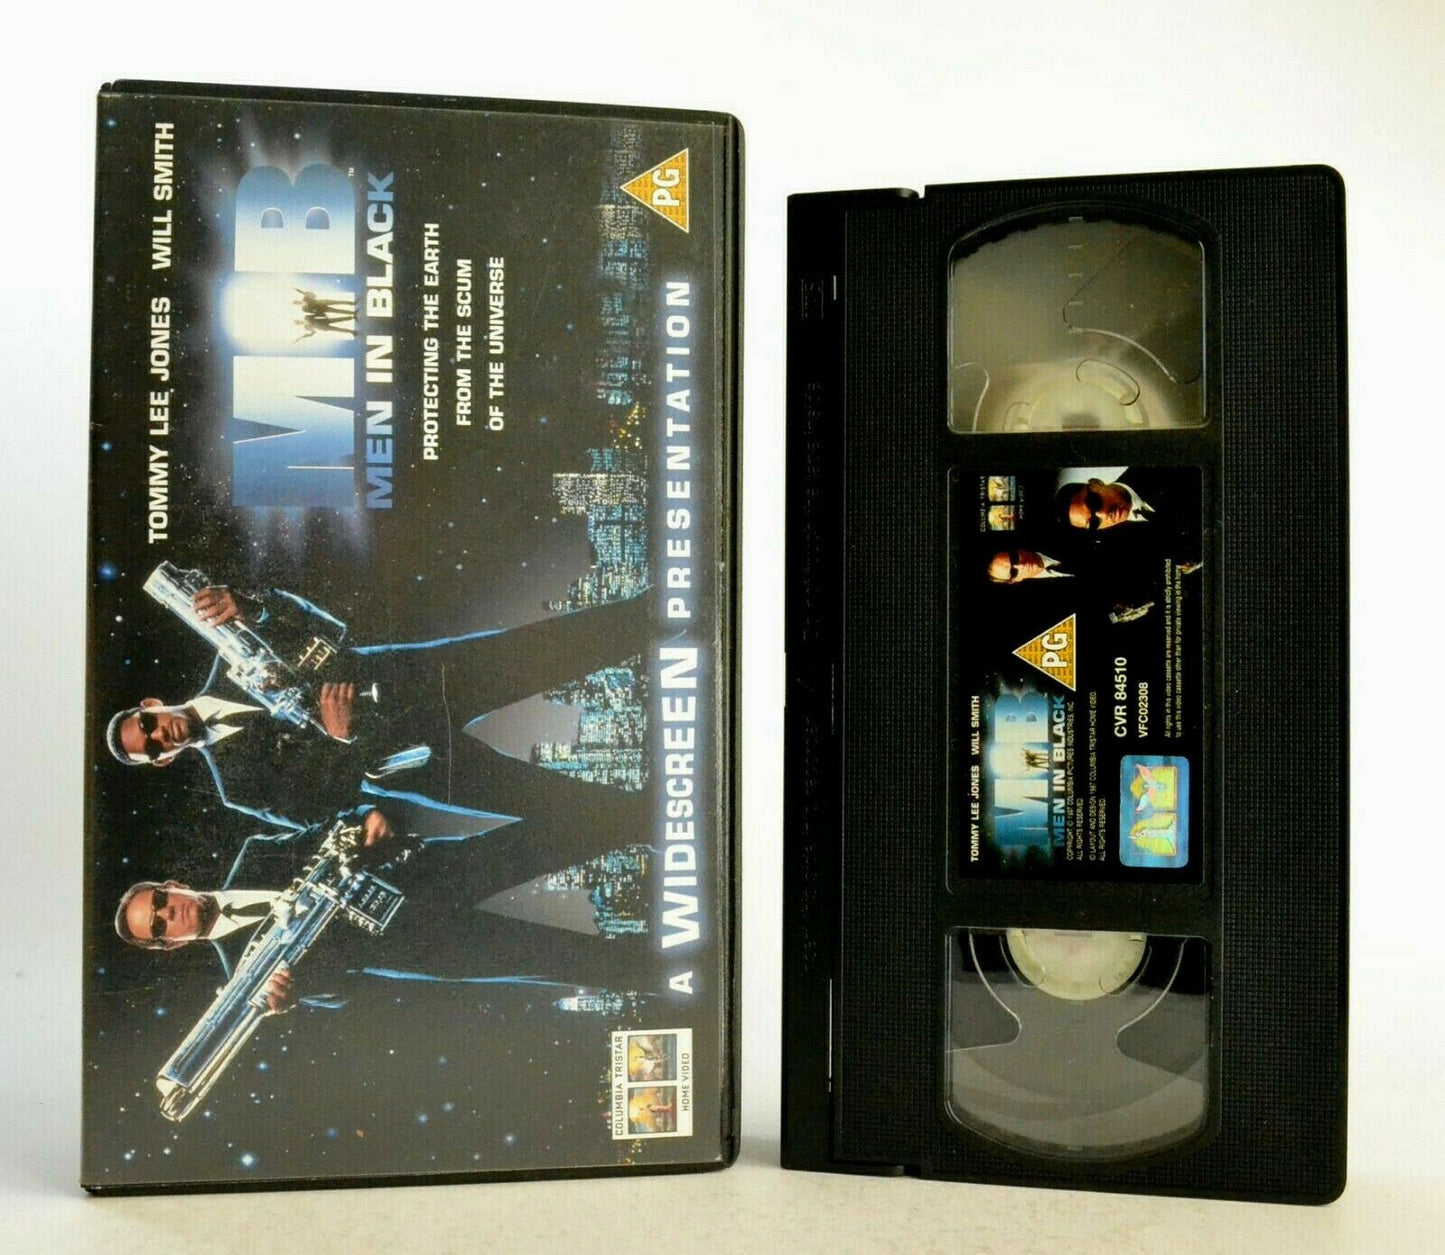 Men In Black: T.Lee Jones/W.Smith - Sci-Fi/Comedy (1997) - Widescreen - Pal VHS-